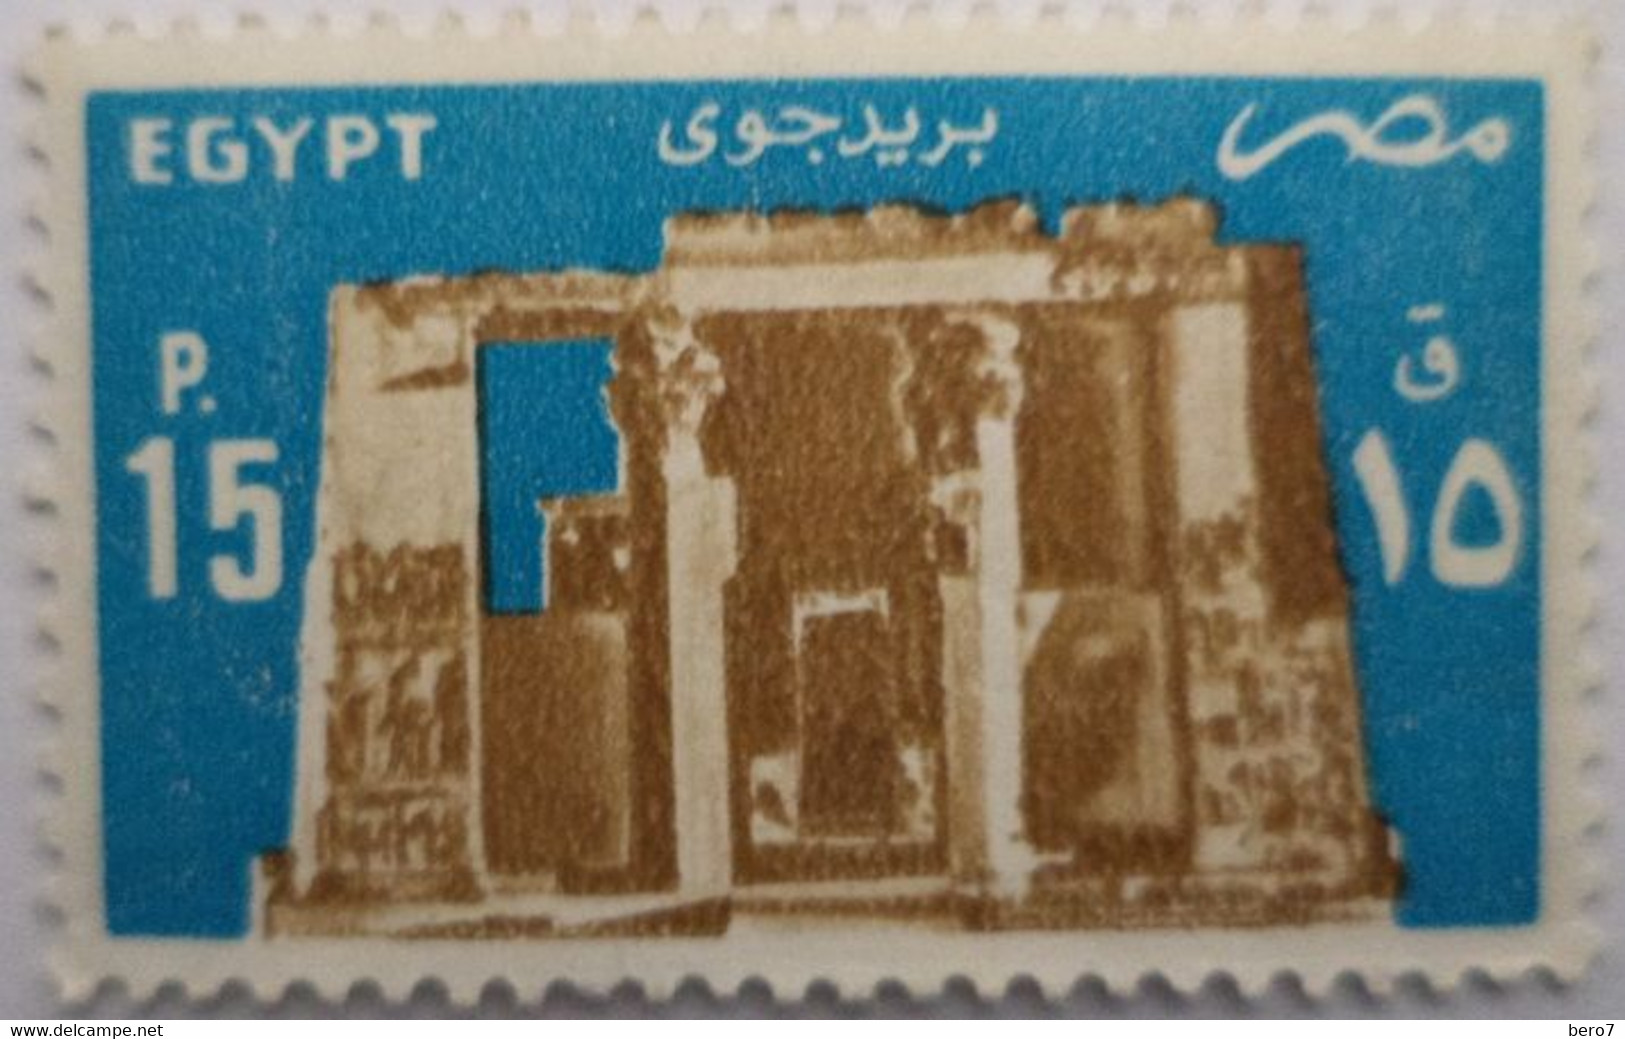 EGYPT- 1985 - Temple Of Horus, Edfu [MNH] (Egypte) (Egitto) (Ägypten) - Usati